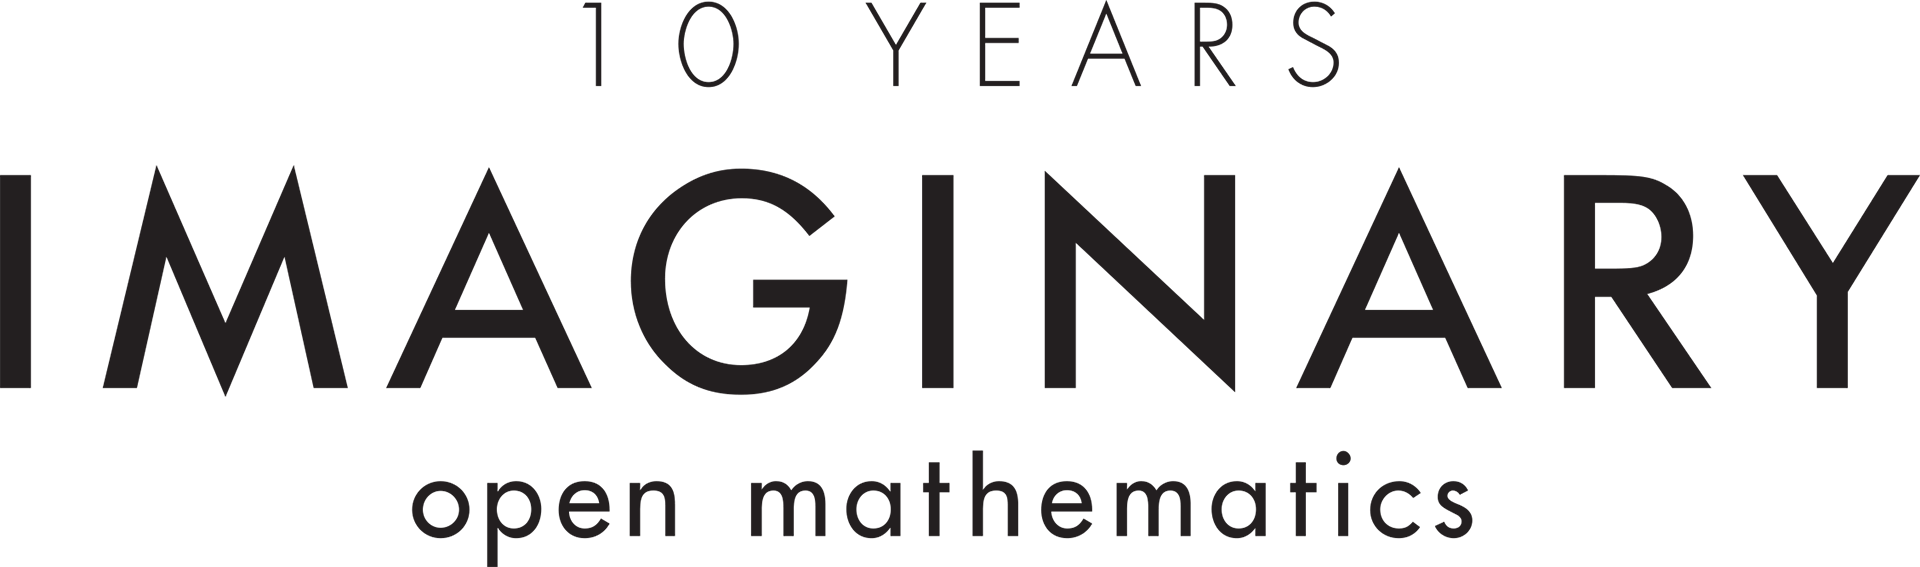 10 Years: IMAGINARY, Open Mathematics